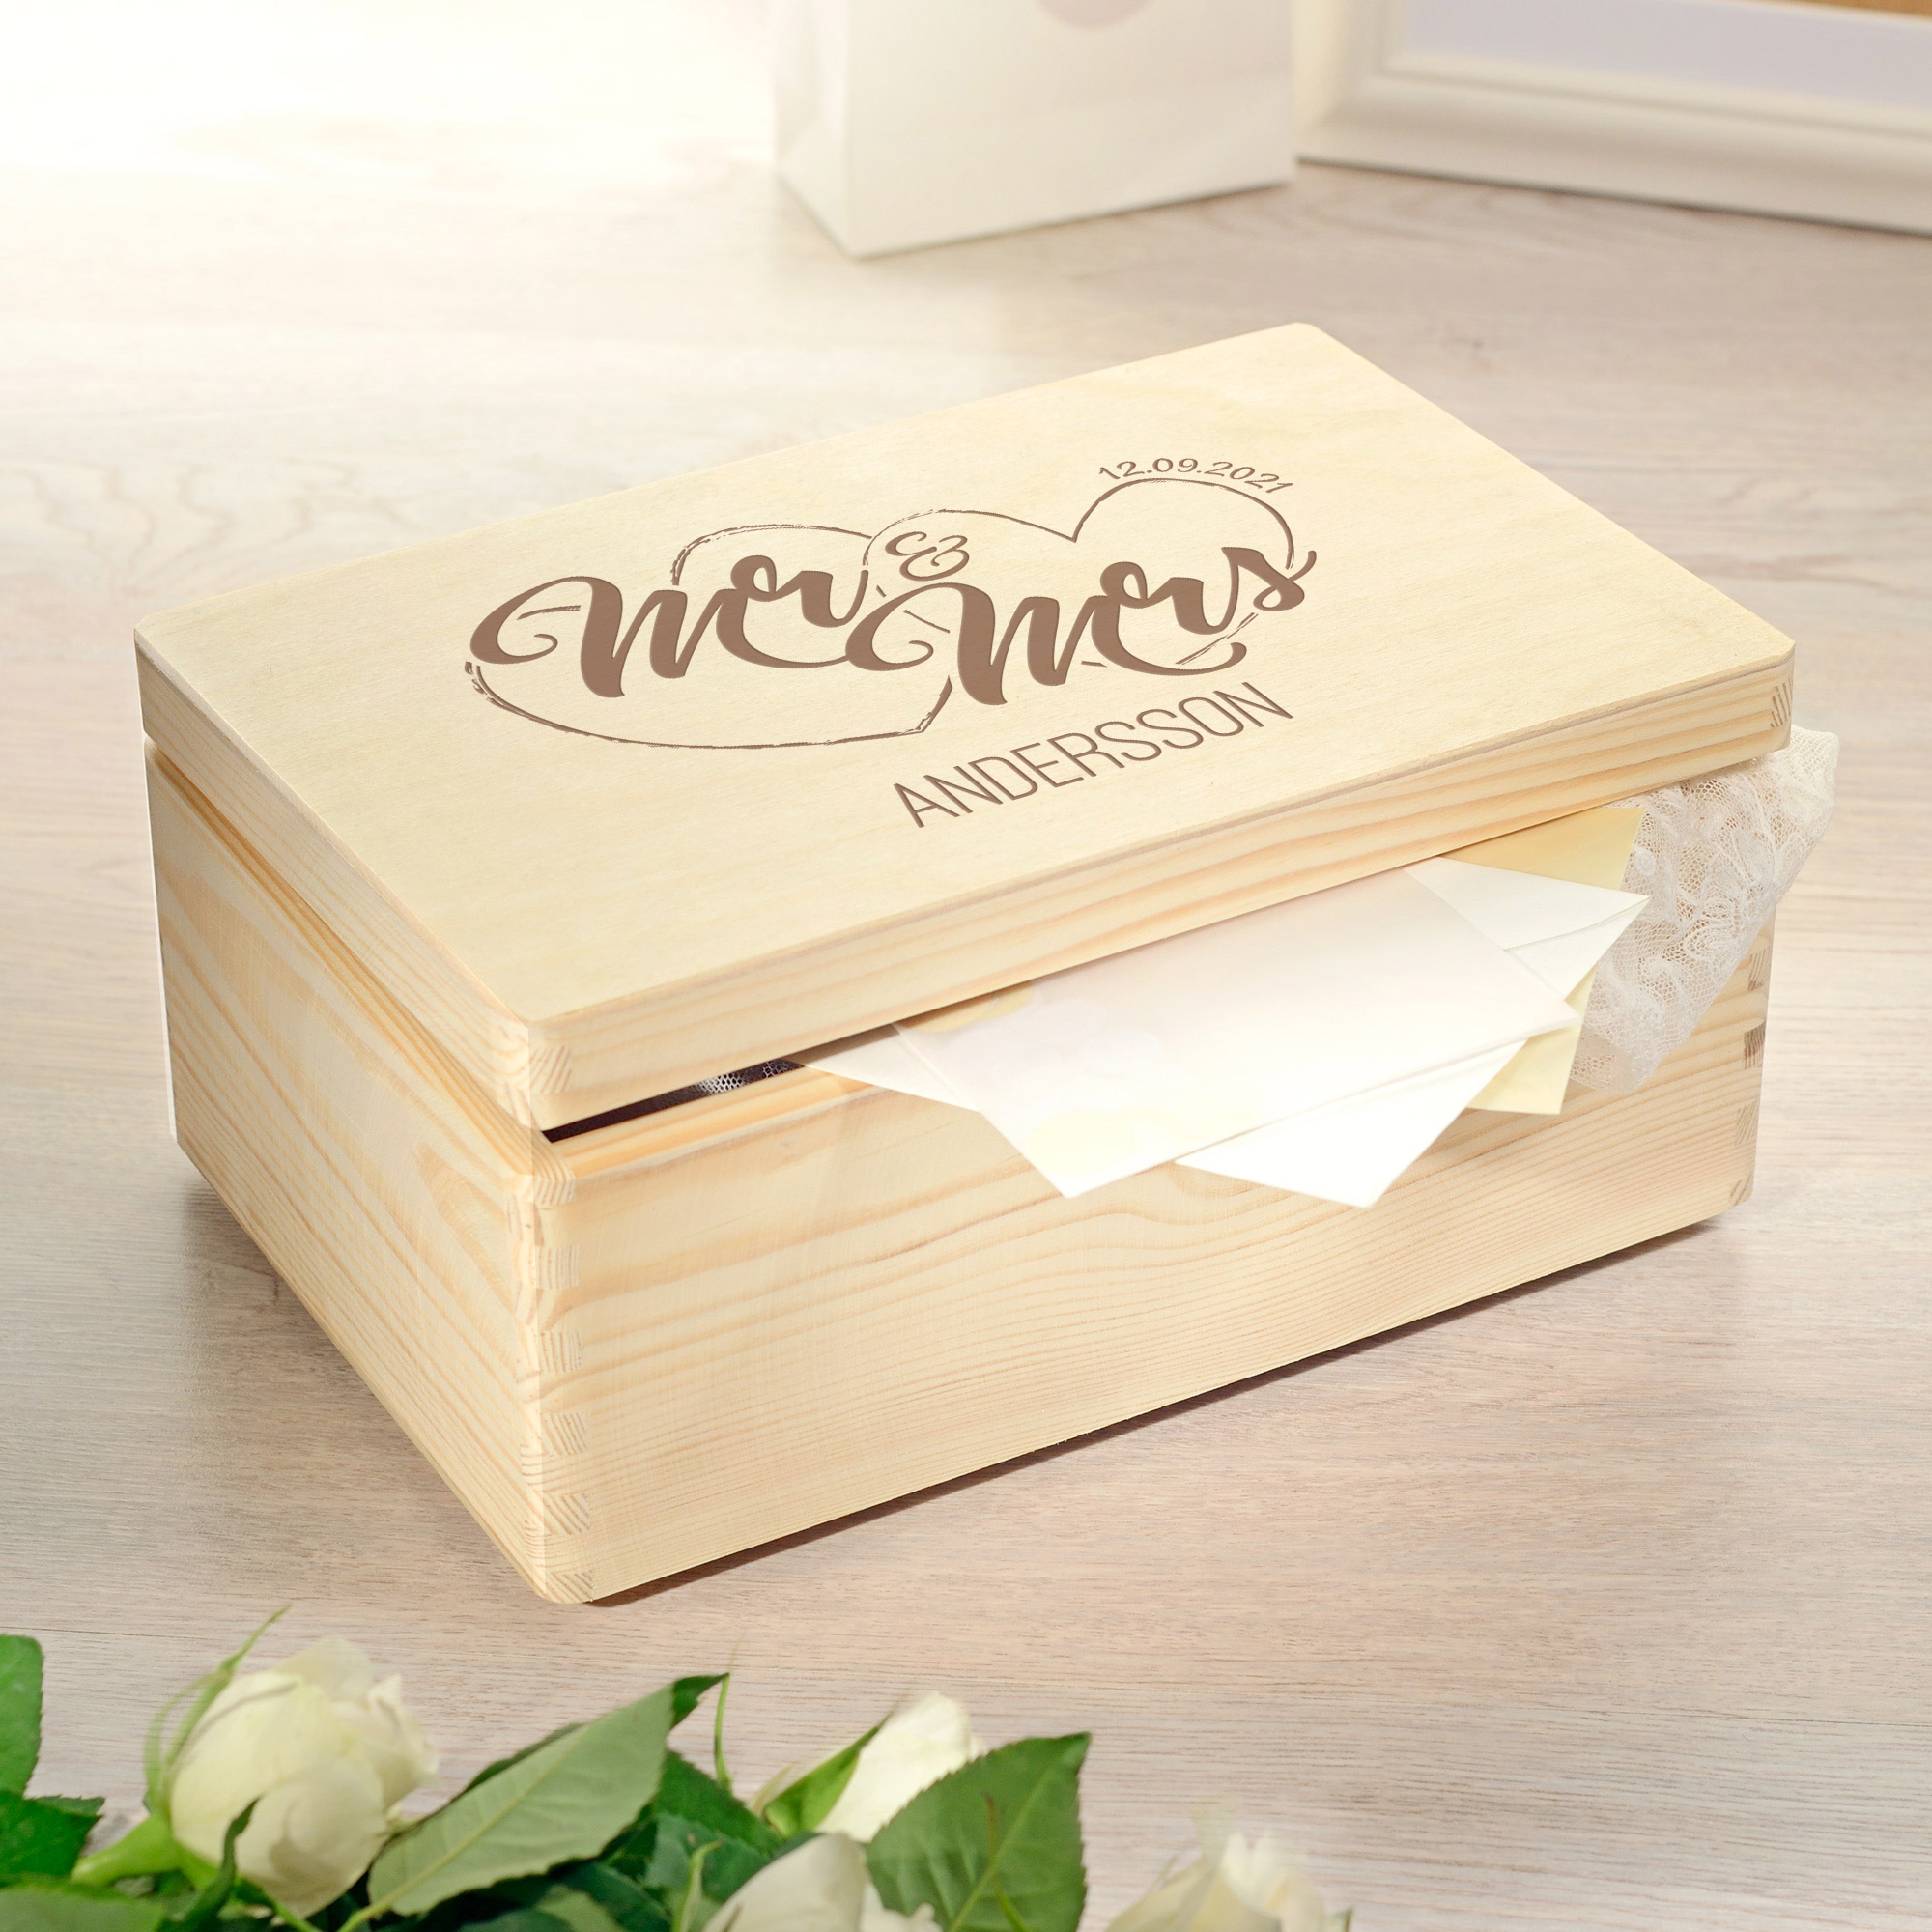 Erinnerungsbox mit Gravur - Mr & Mrs - Geschenkbox Hochzeit